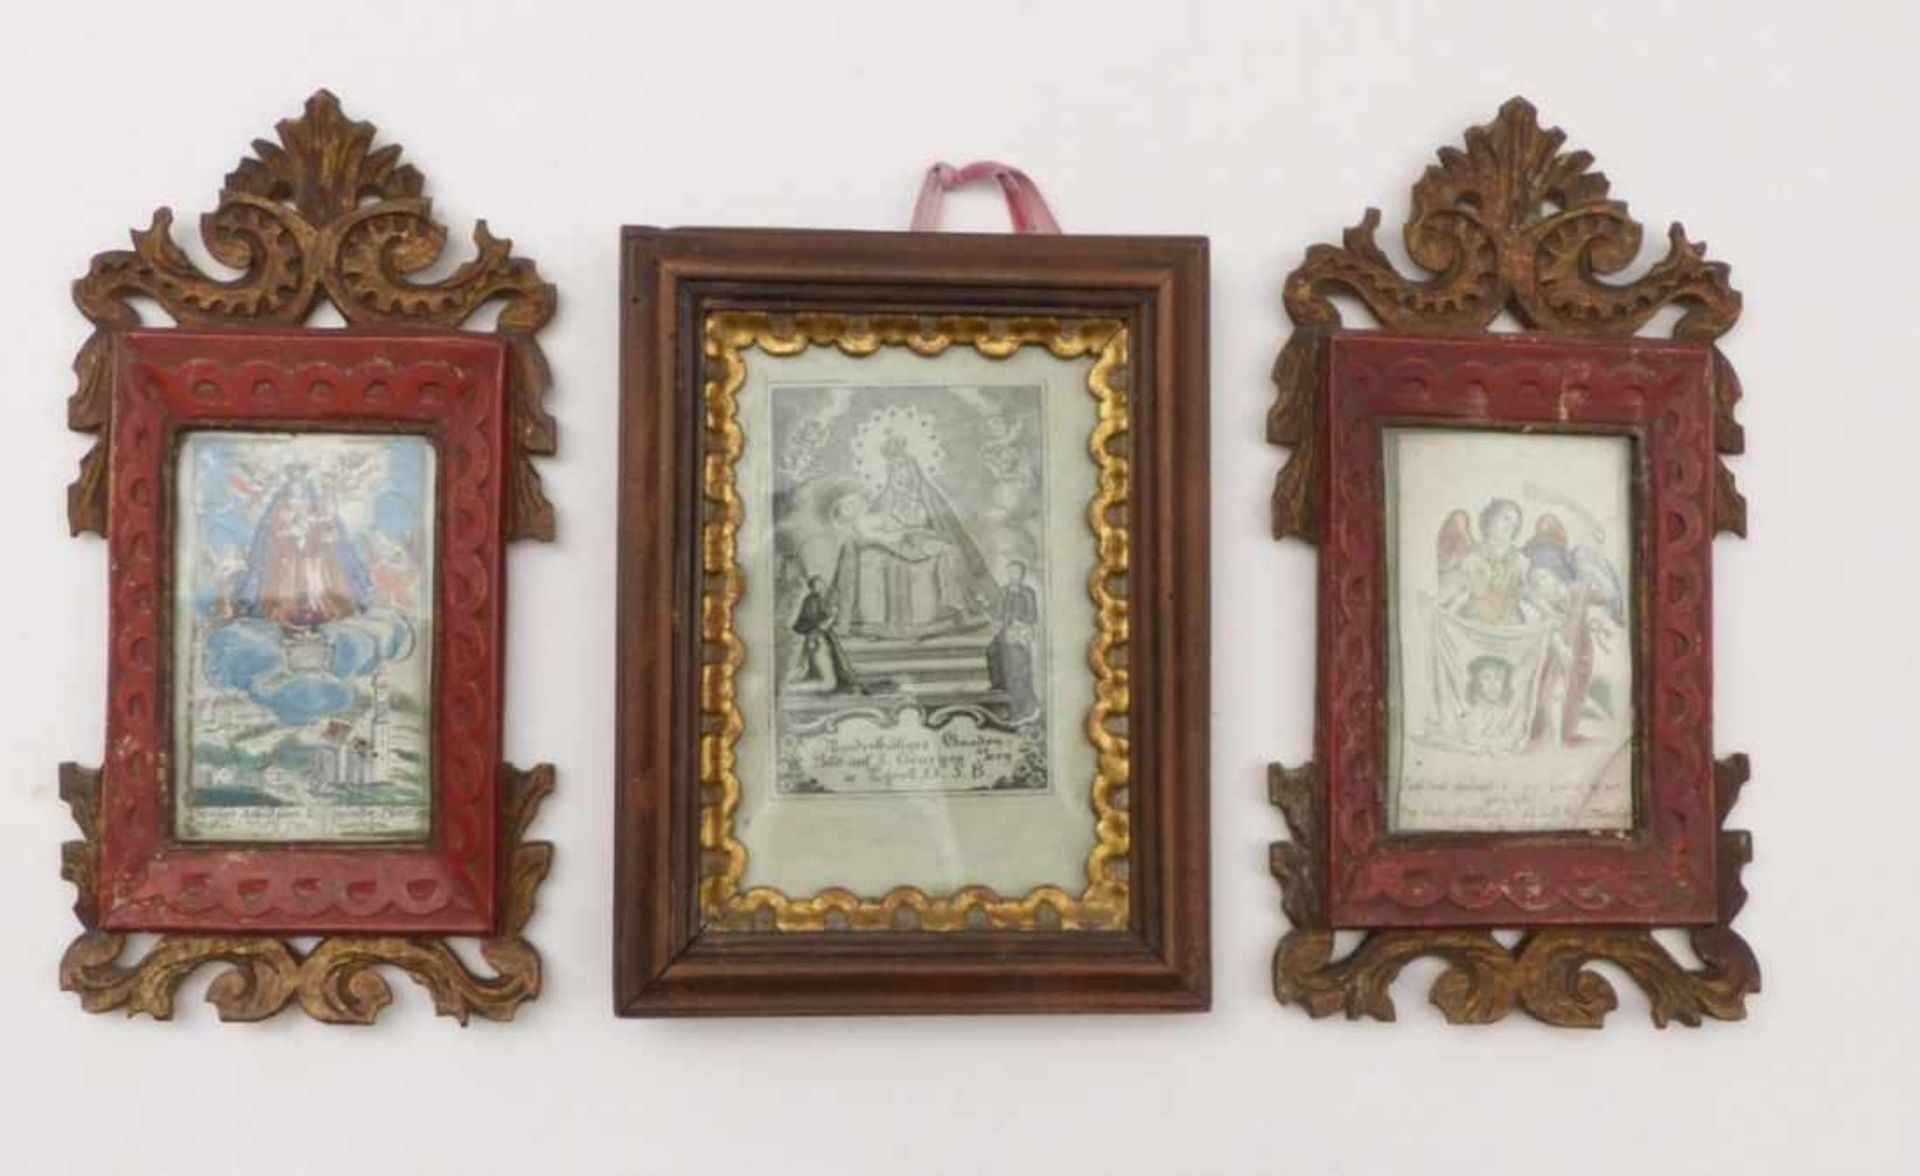 Drei kleine Andachtsbilder18. Jh.Hochrechteckige Darstellungen mit Maria Immakulata, zwei Engel